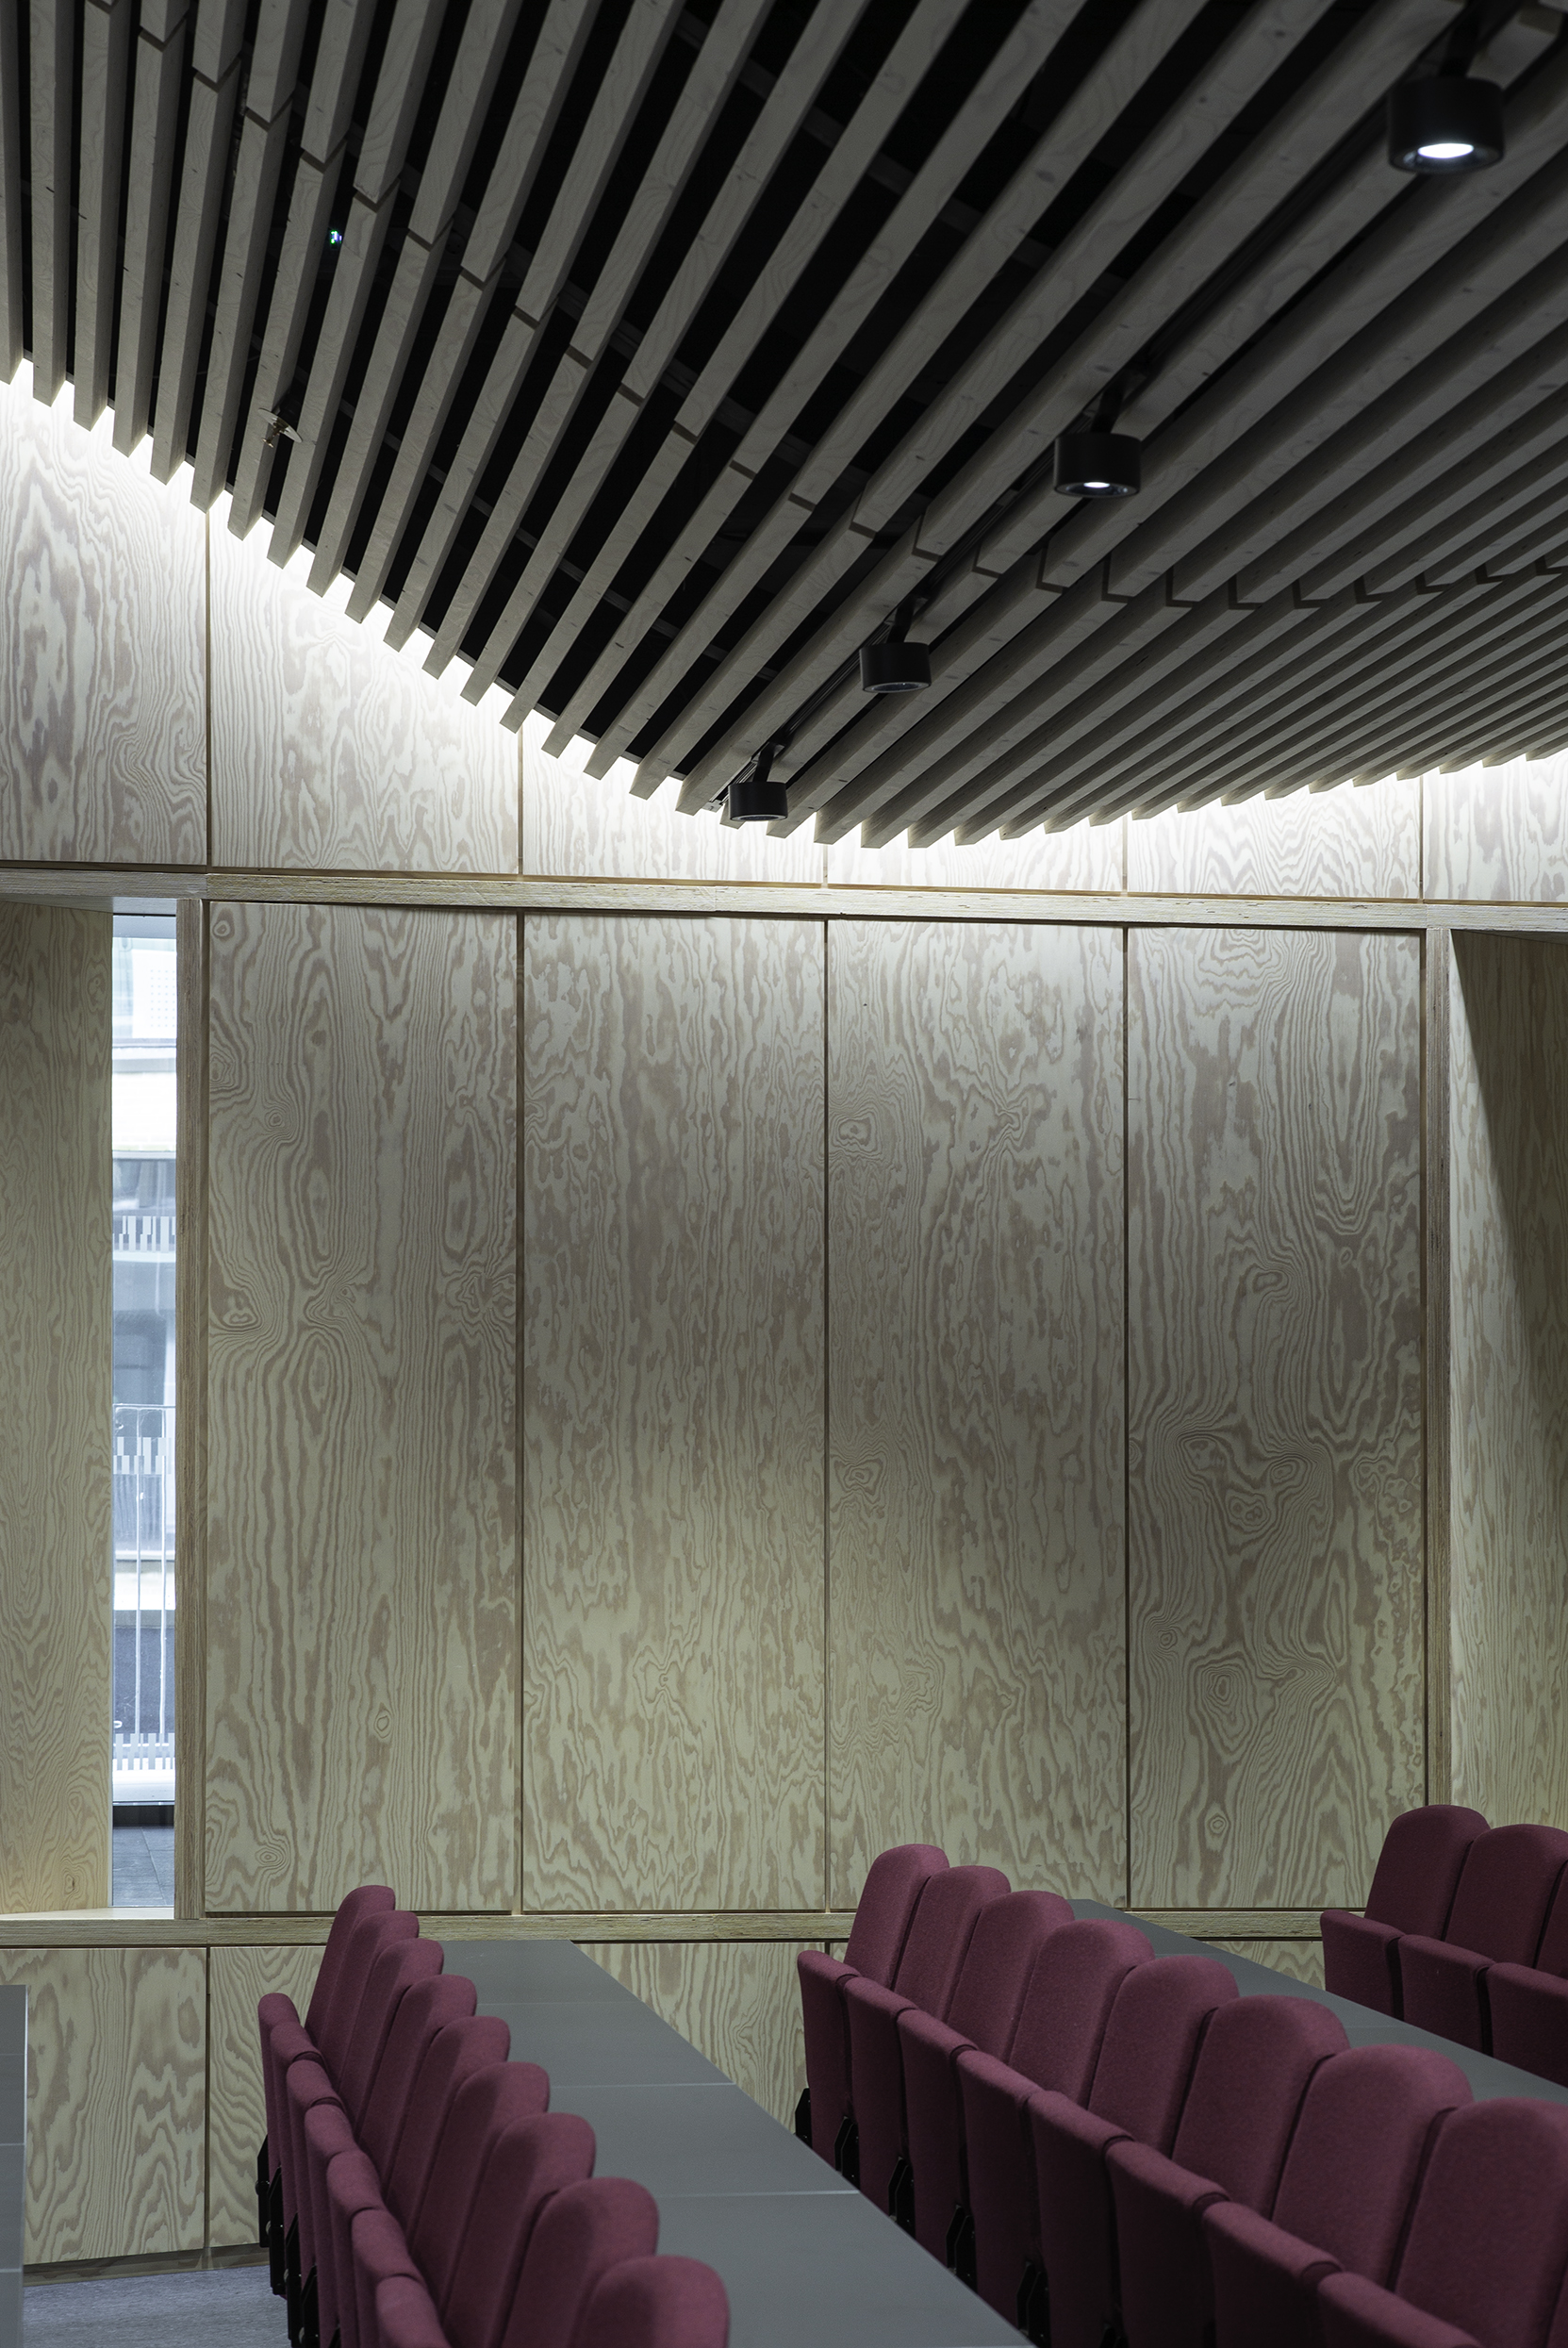 Foredragssal med glatte træpaneler på vægge og vinrøde stole